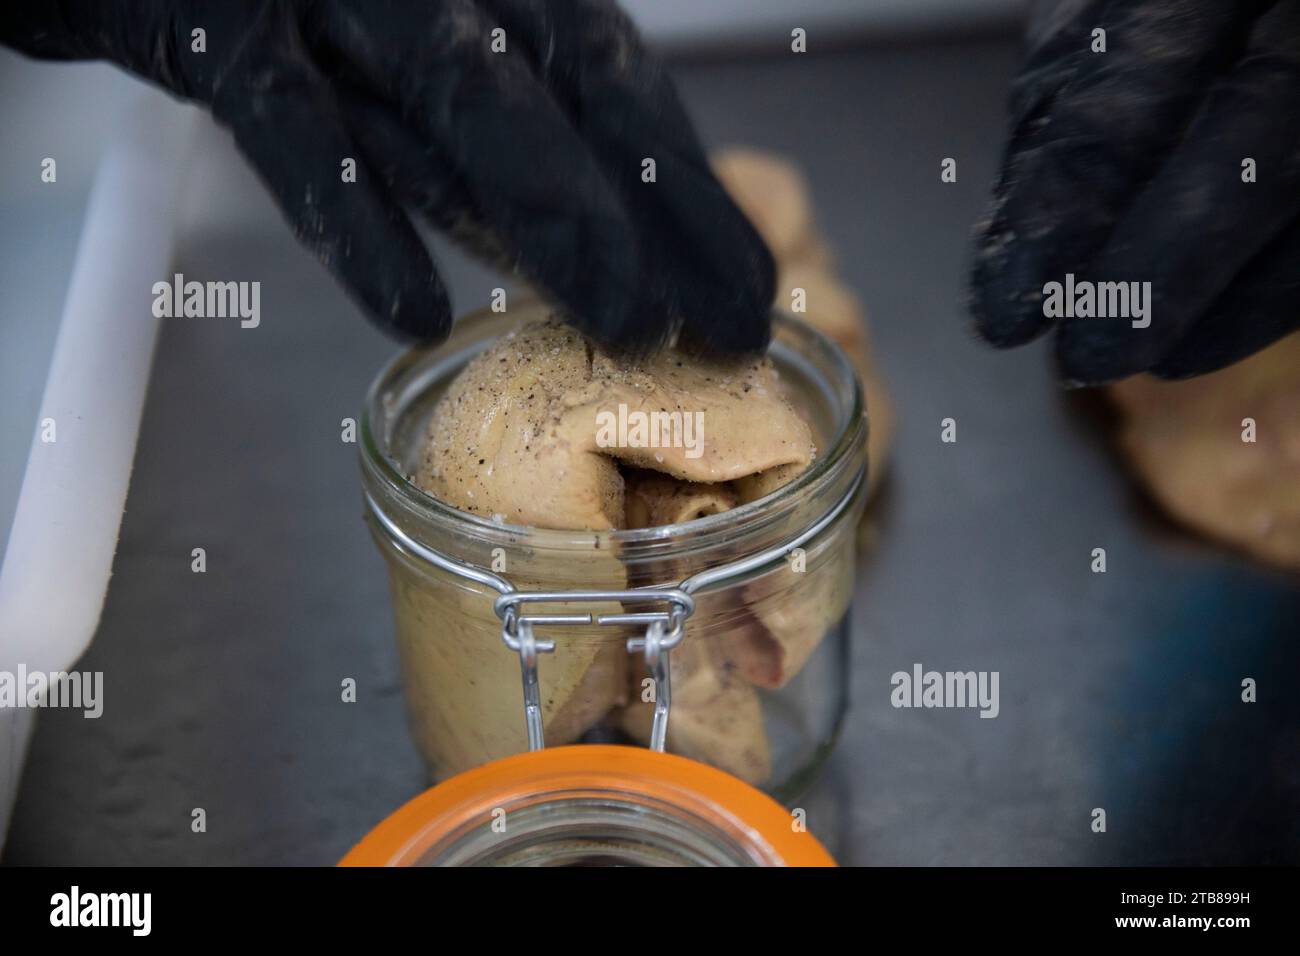 Préparation du foie gras de canard à la ferme du Haut-Pouyet à Saint-Aubin, dans le département des Landes (sud-ouest de la France). Foie gras assaisonné de sel A. Banque D'Images